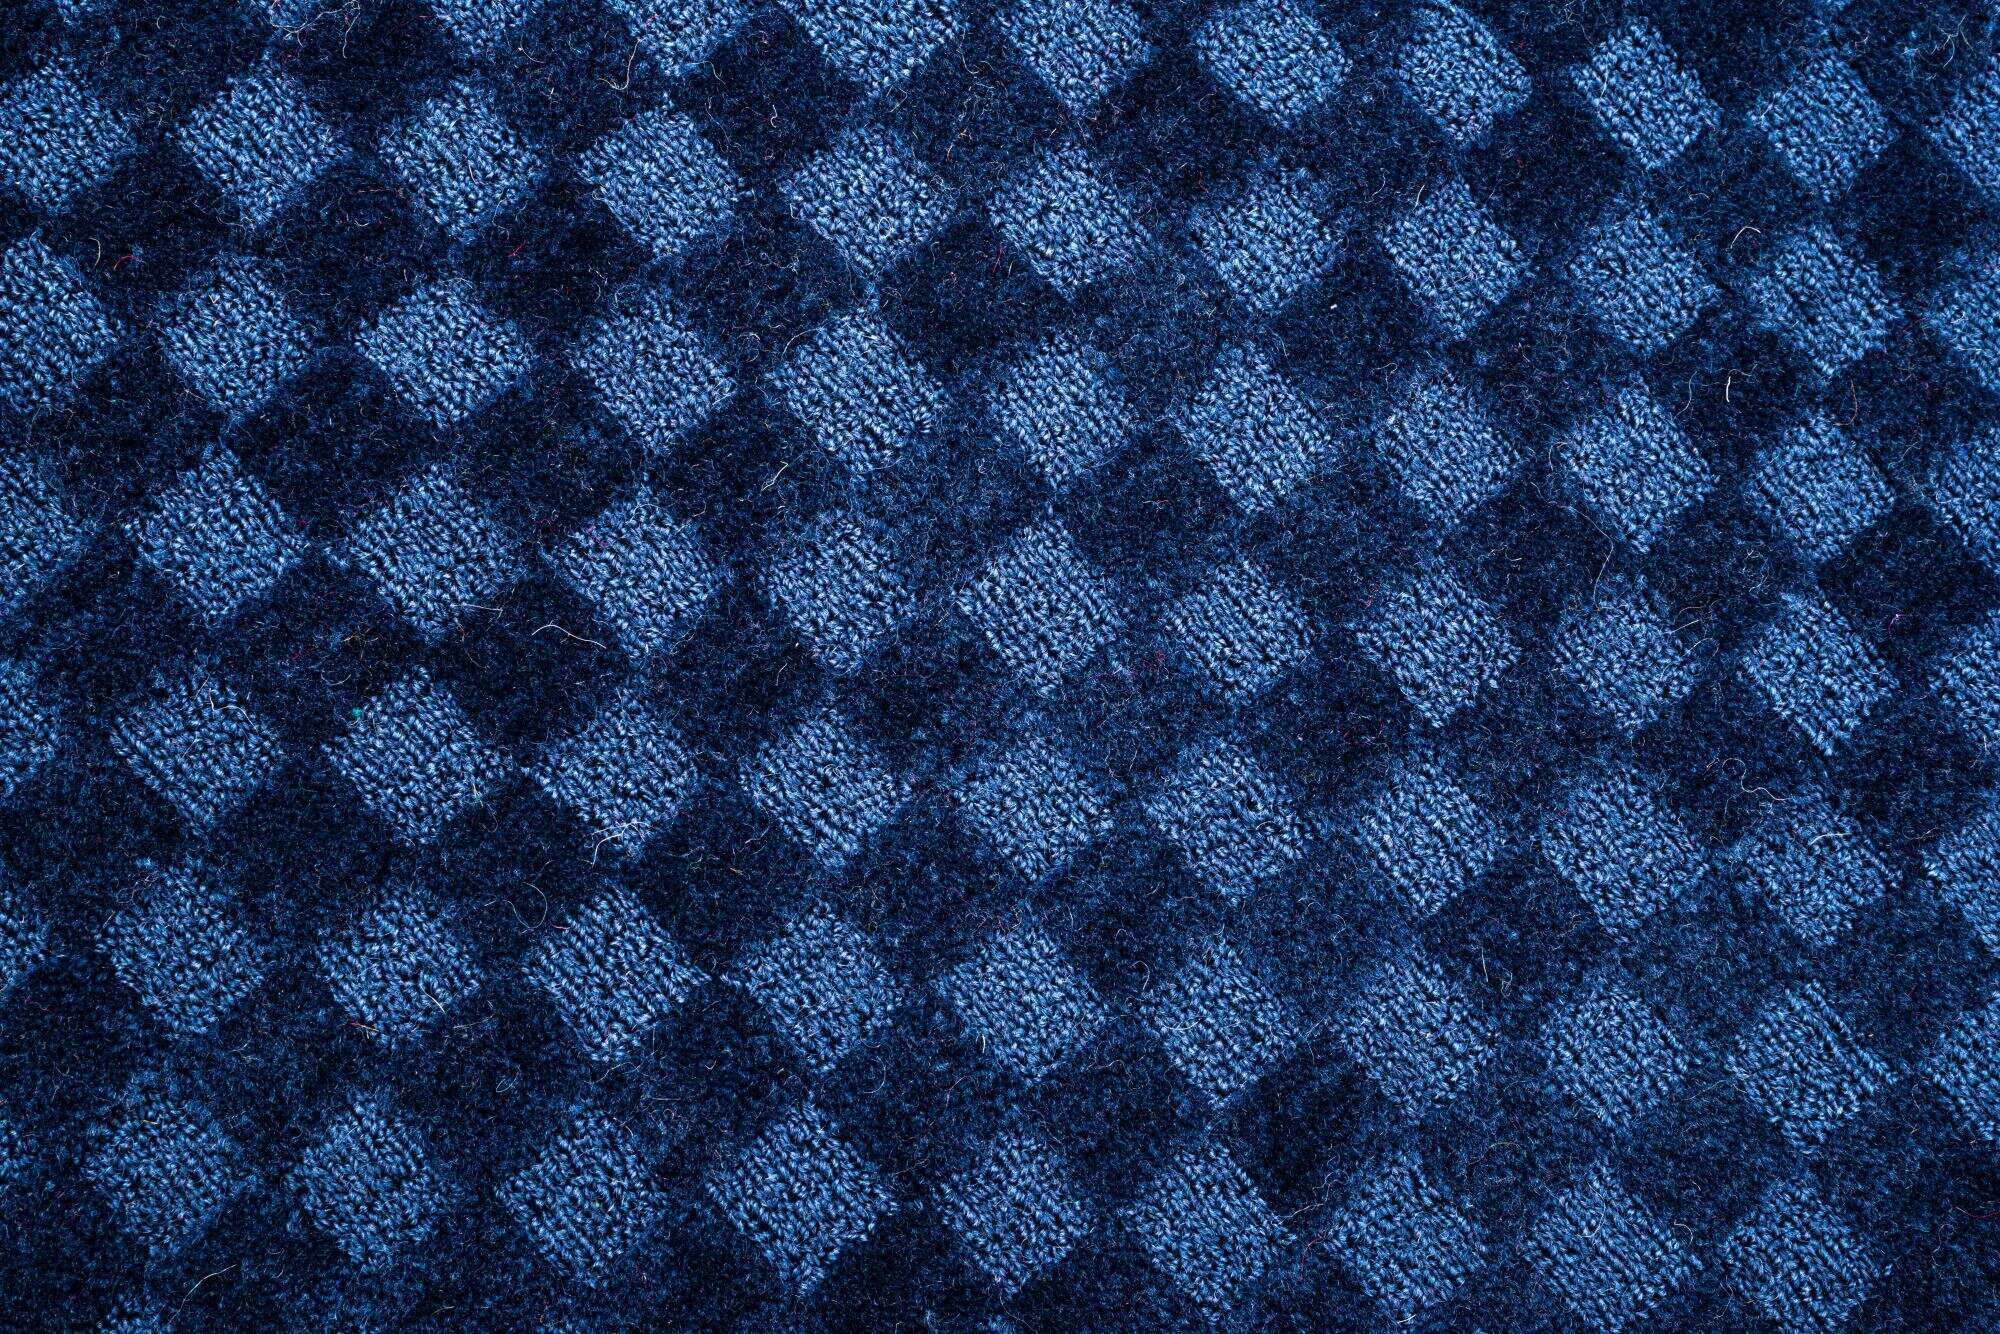 Design Teppich Taimur 160x230cm Handgearbeitet Schurwolle blau